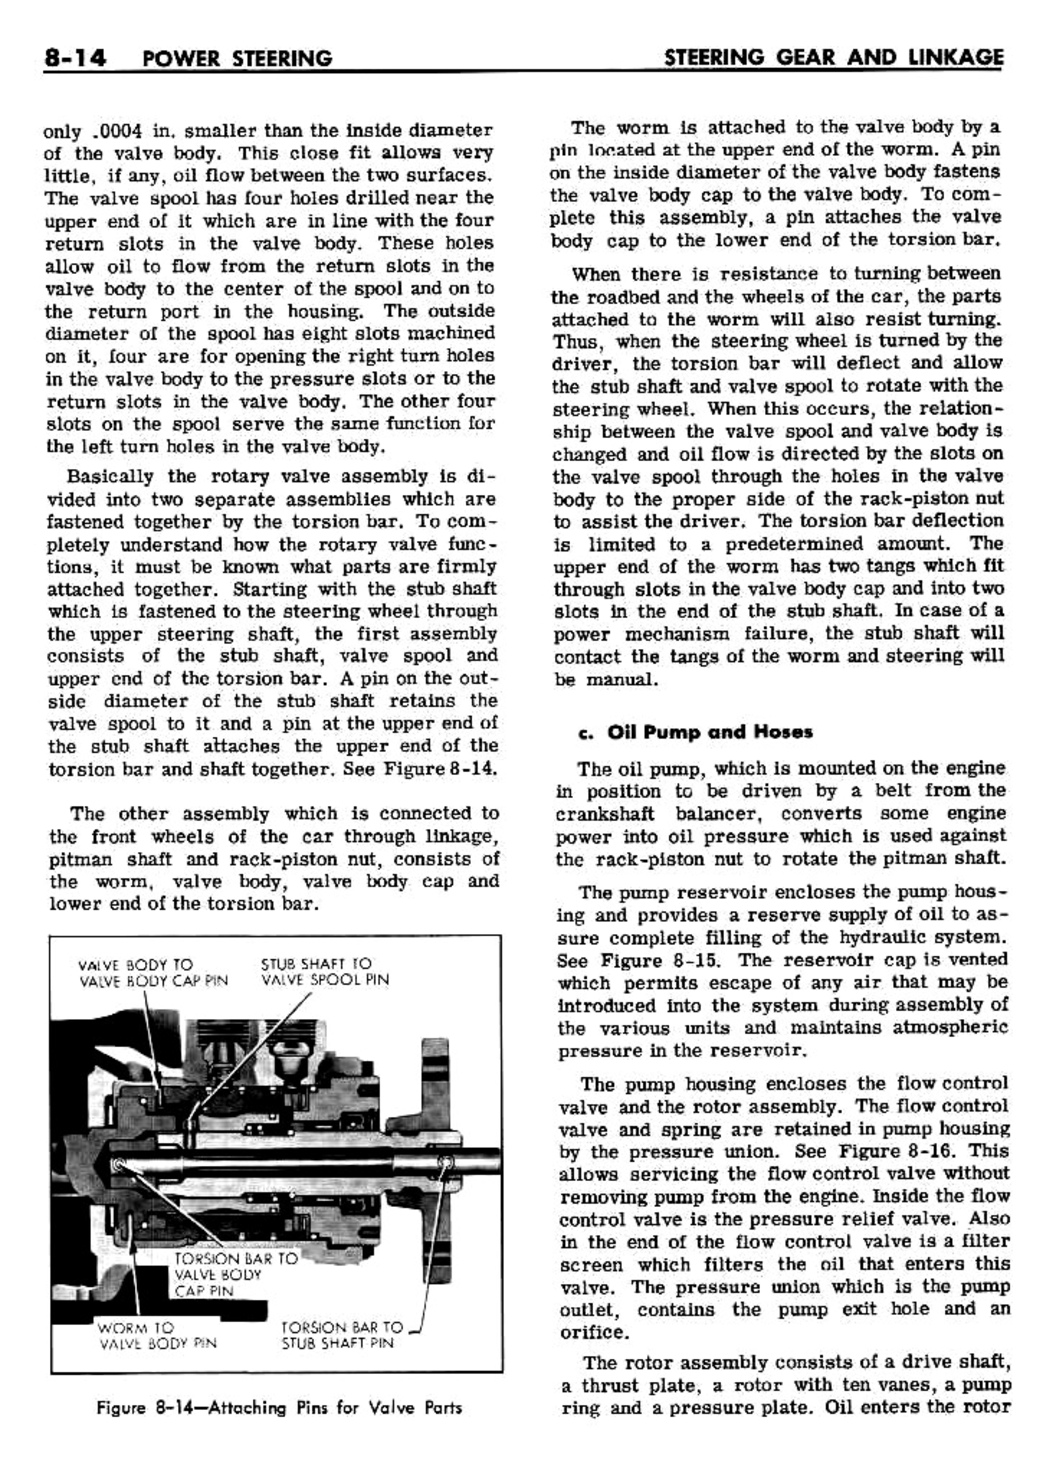 n_08 1961 Buick Shop Manual - Steering-014-014.jpg